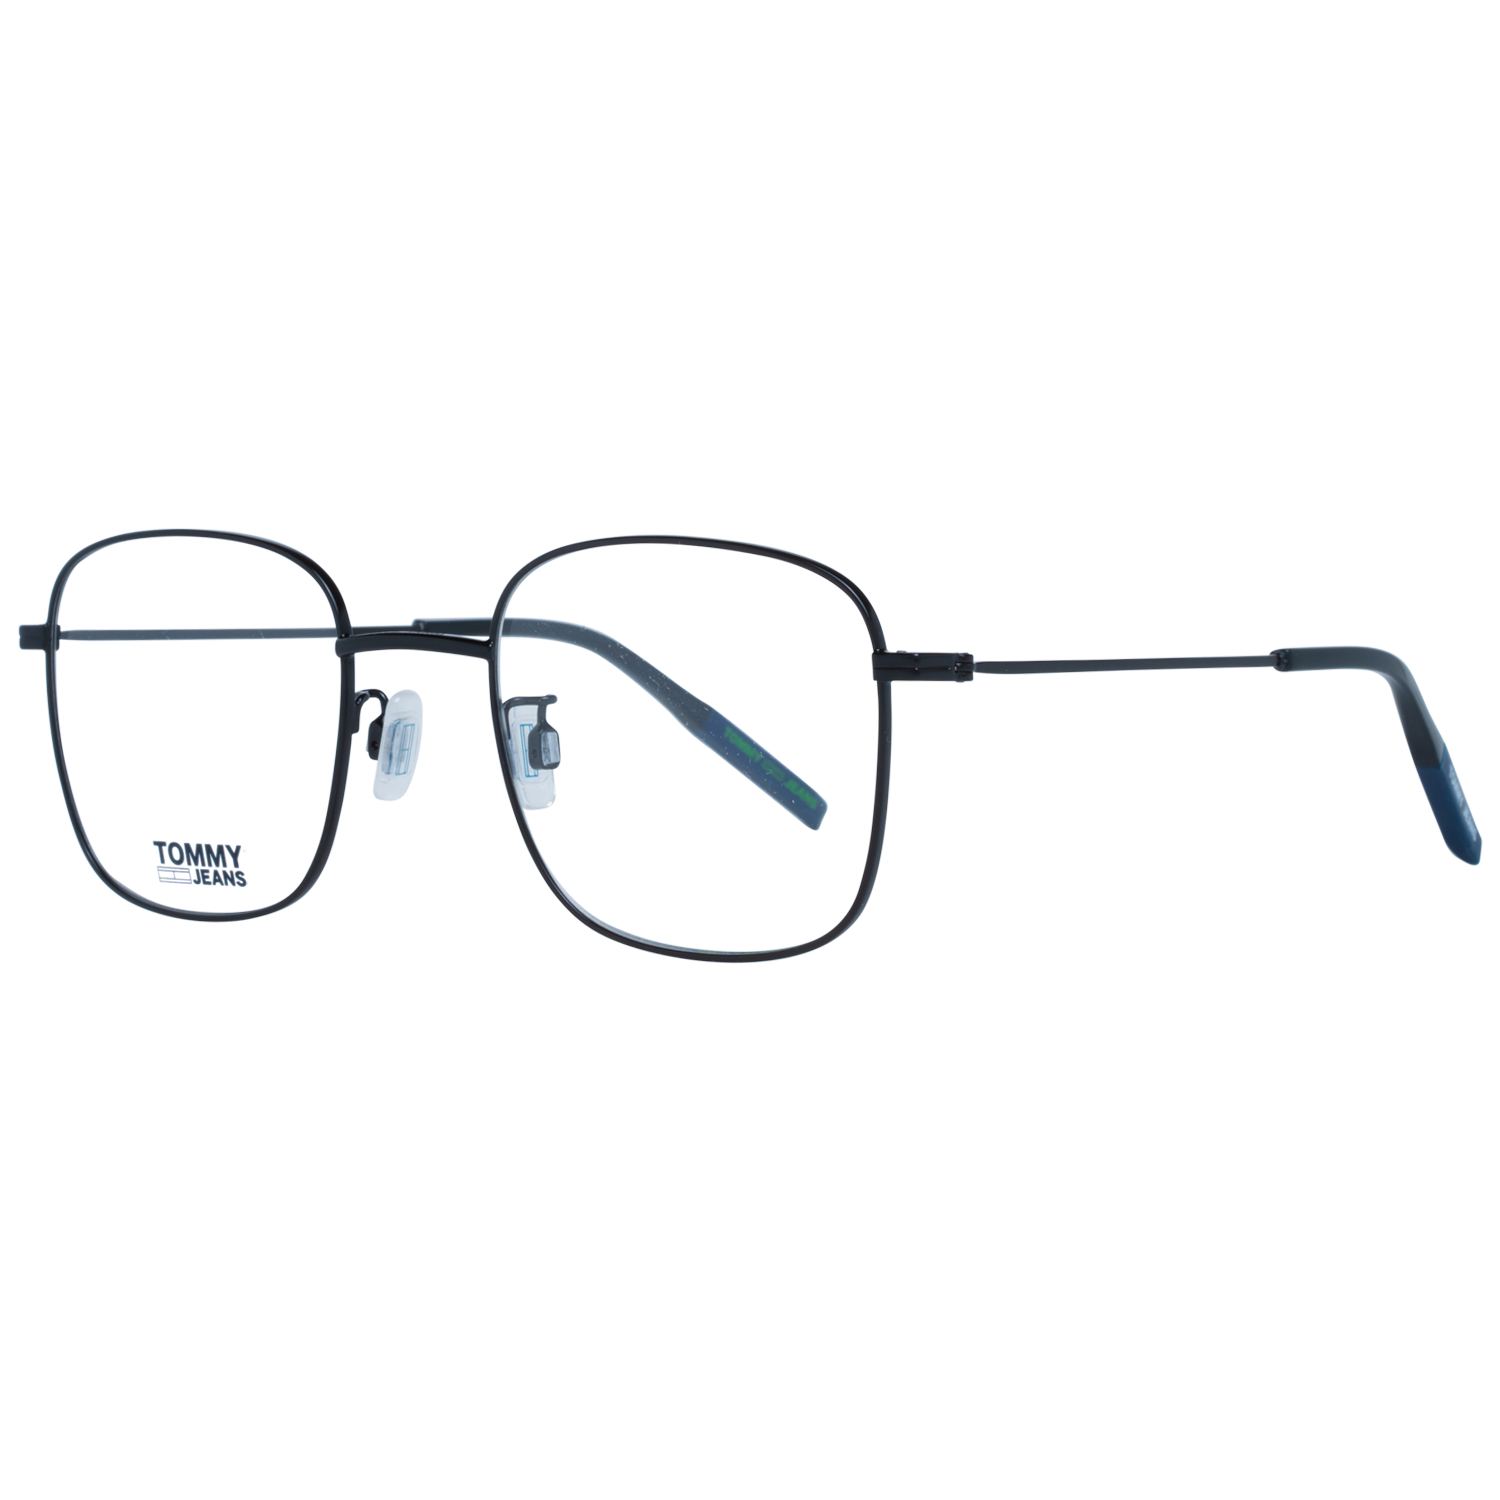 Tommy Hilfiger Frames Tommy Hilfiger Optical Frame TJ 0032 003 49 Eyeglasses Eyewear UK USA Australia 